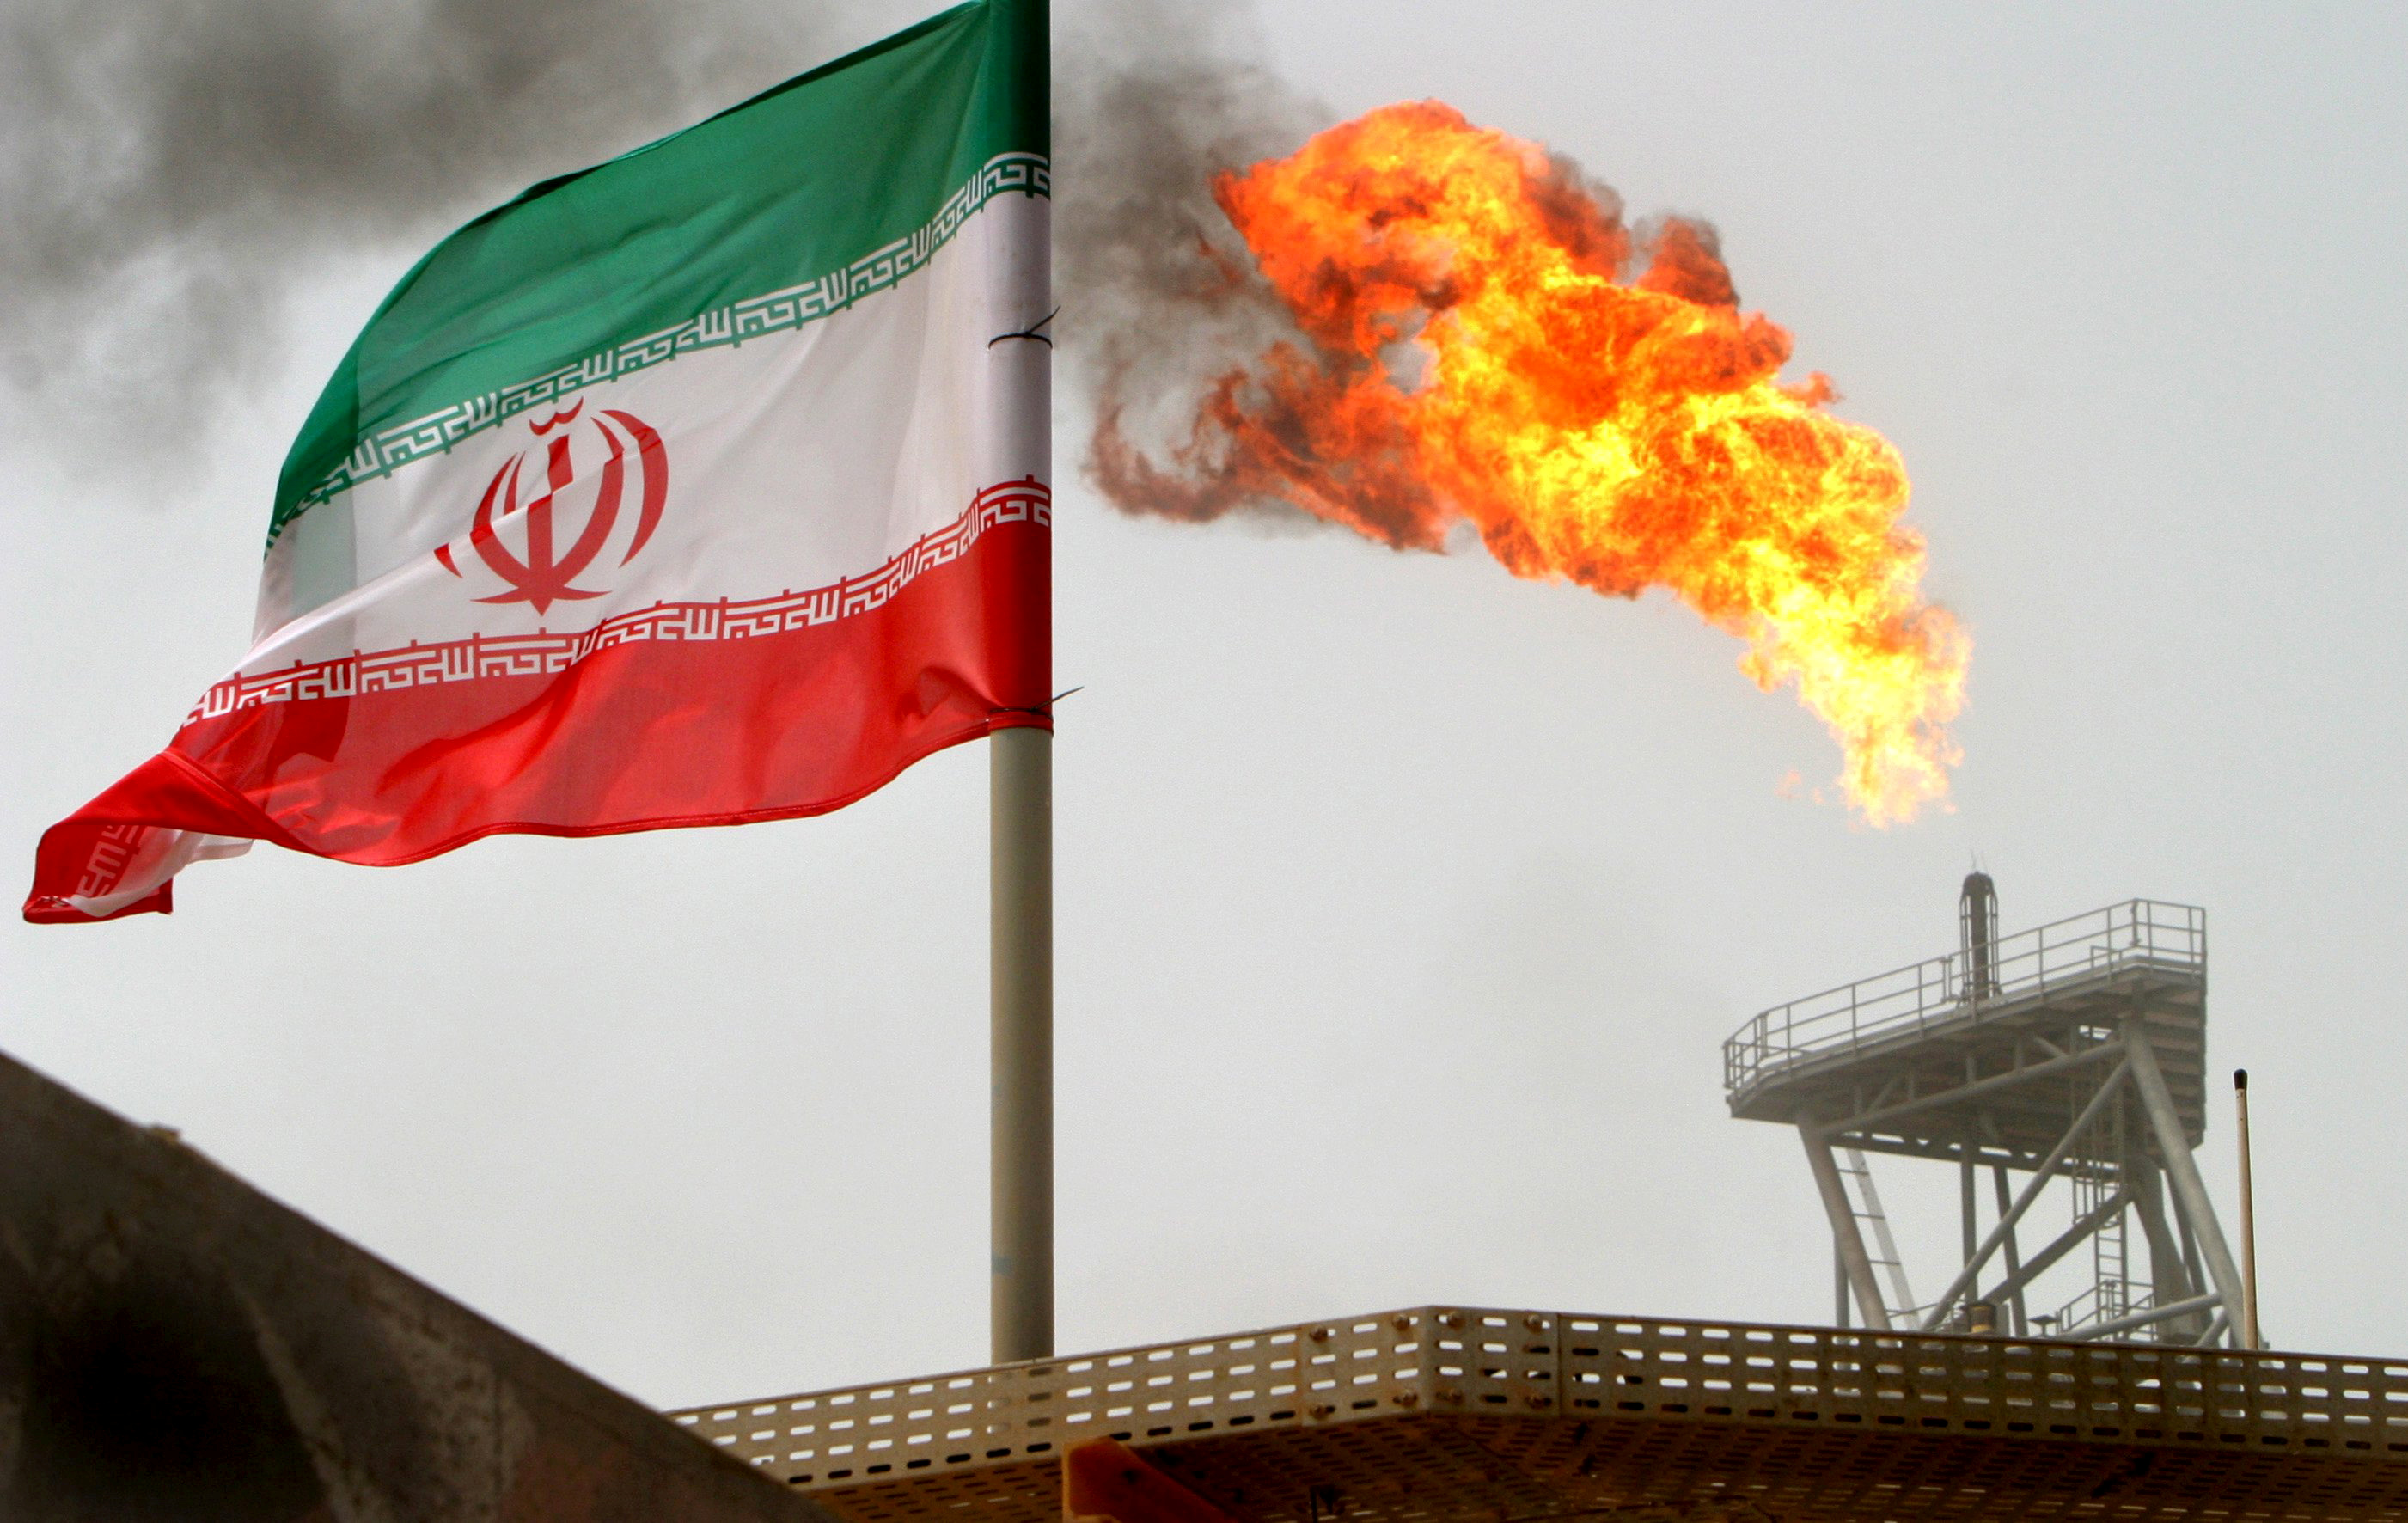 Refinerías japonesas cargan primer embarque de crudo iraní desde sanciones EEUU